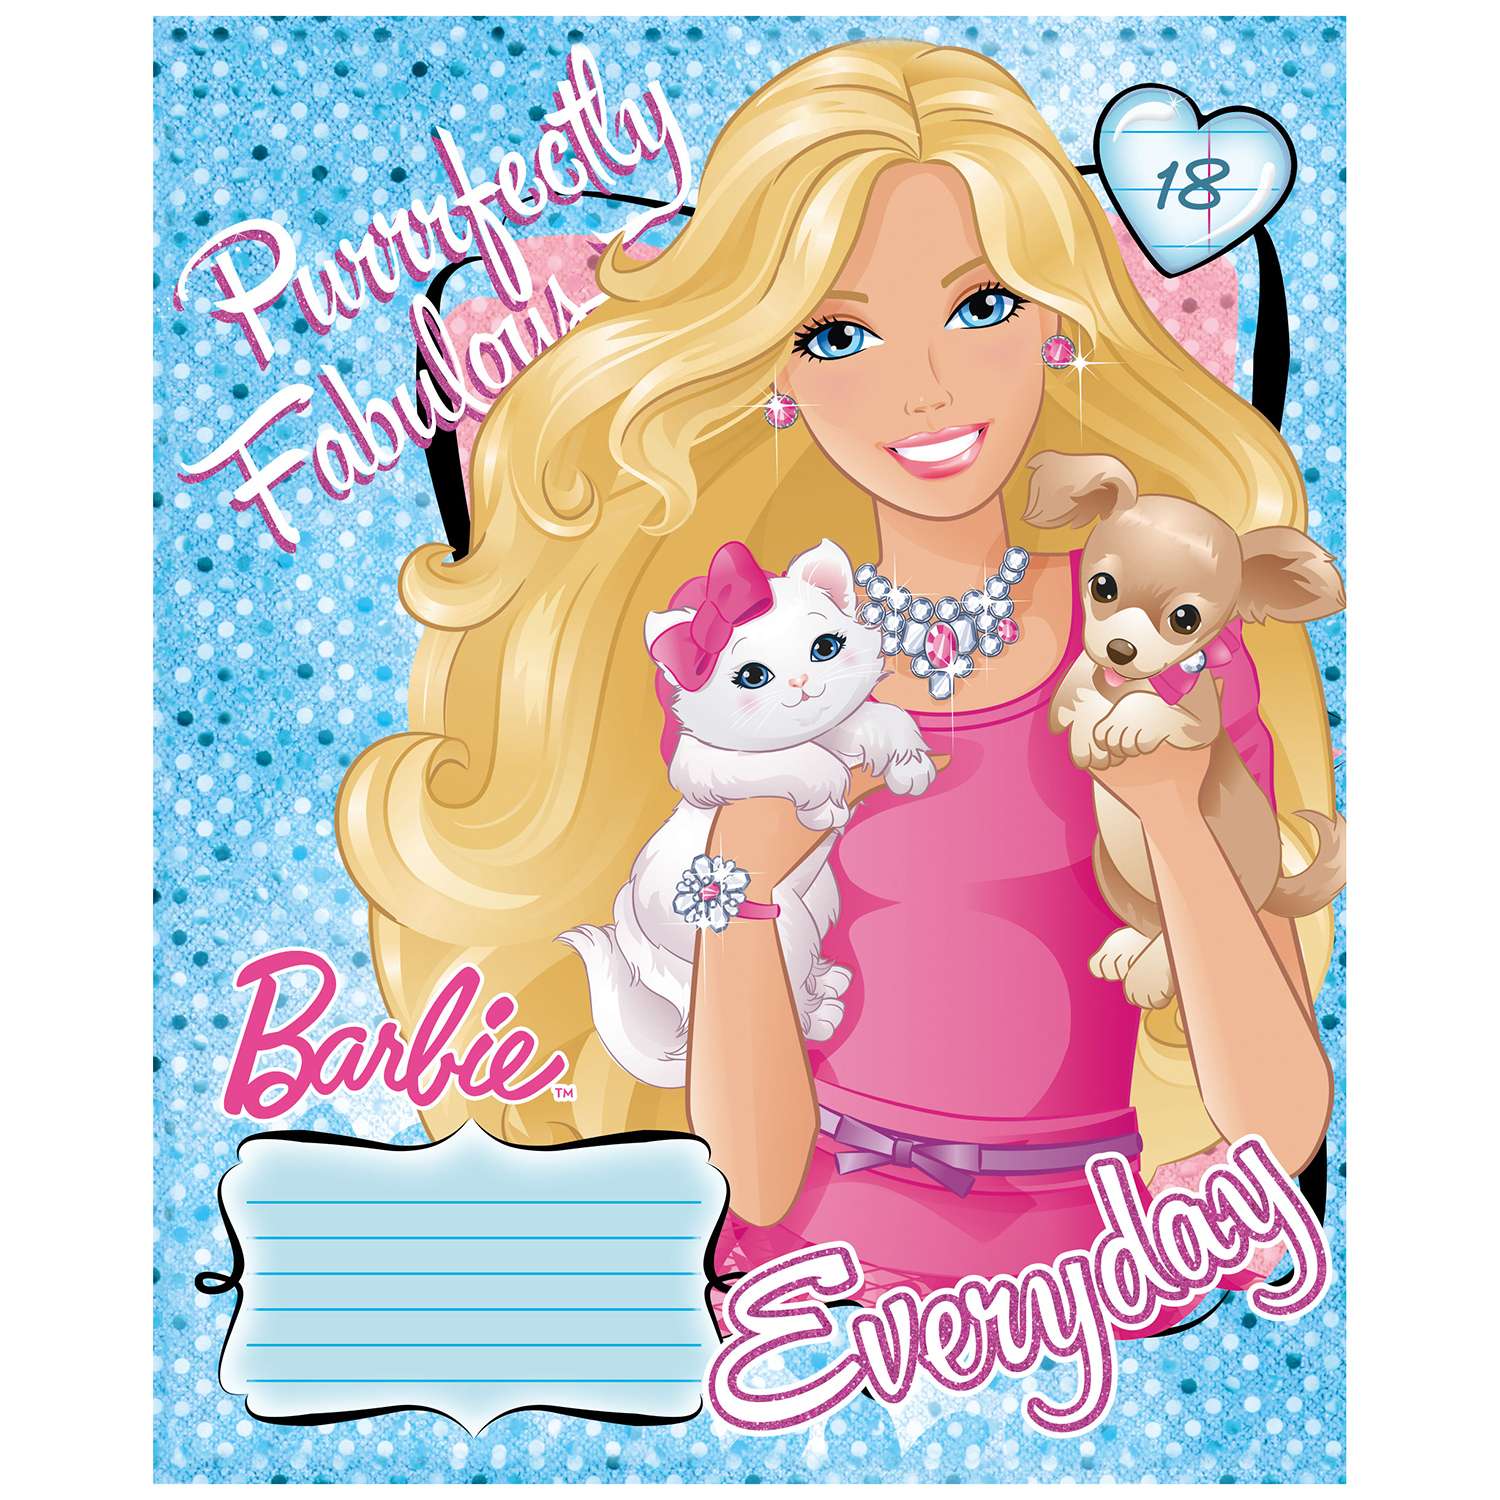 Тетрадь Полиграф Принт Barbie Линия 18л B841/5 - фото 1